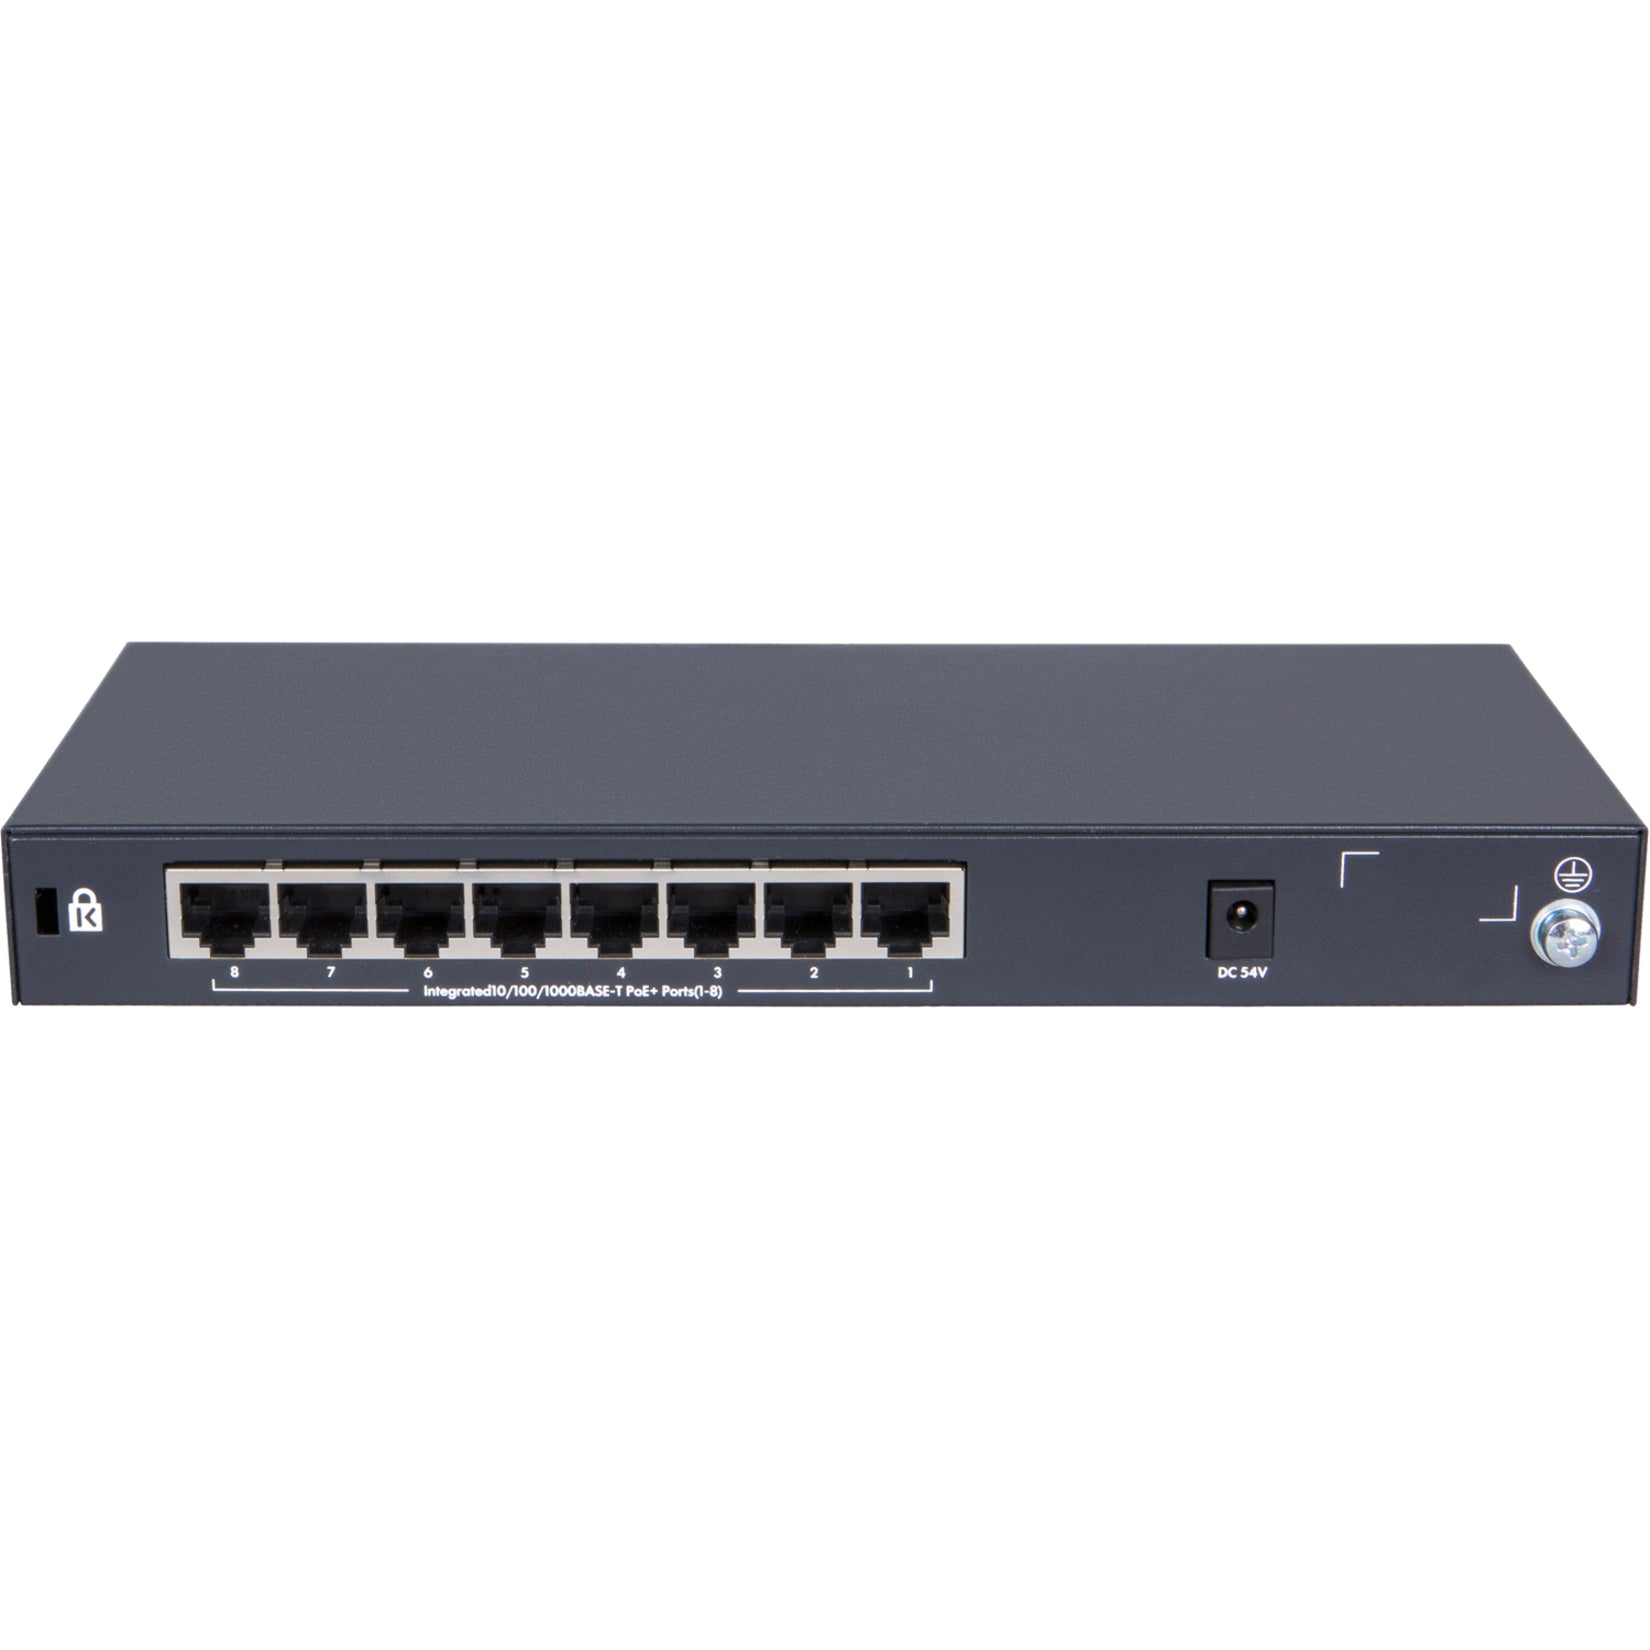 HPE OfficeConnect 1420 8G PoE+ (64W) Switch, 8 x Gigabit Ethernet Network, Lifetime Warranty, REACH Certified